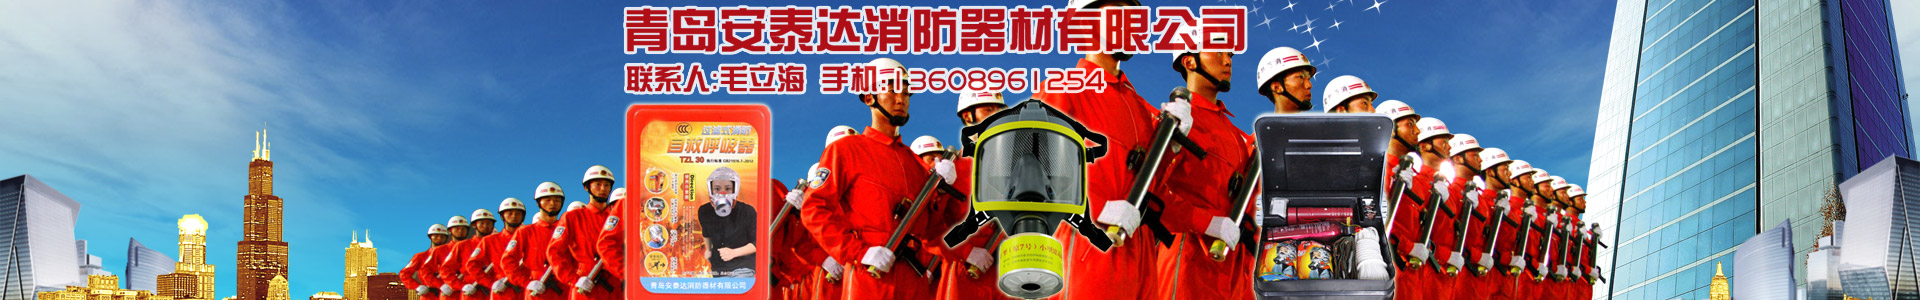 聯系我們-青島安泰達消防器材有限公司-